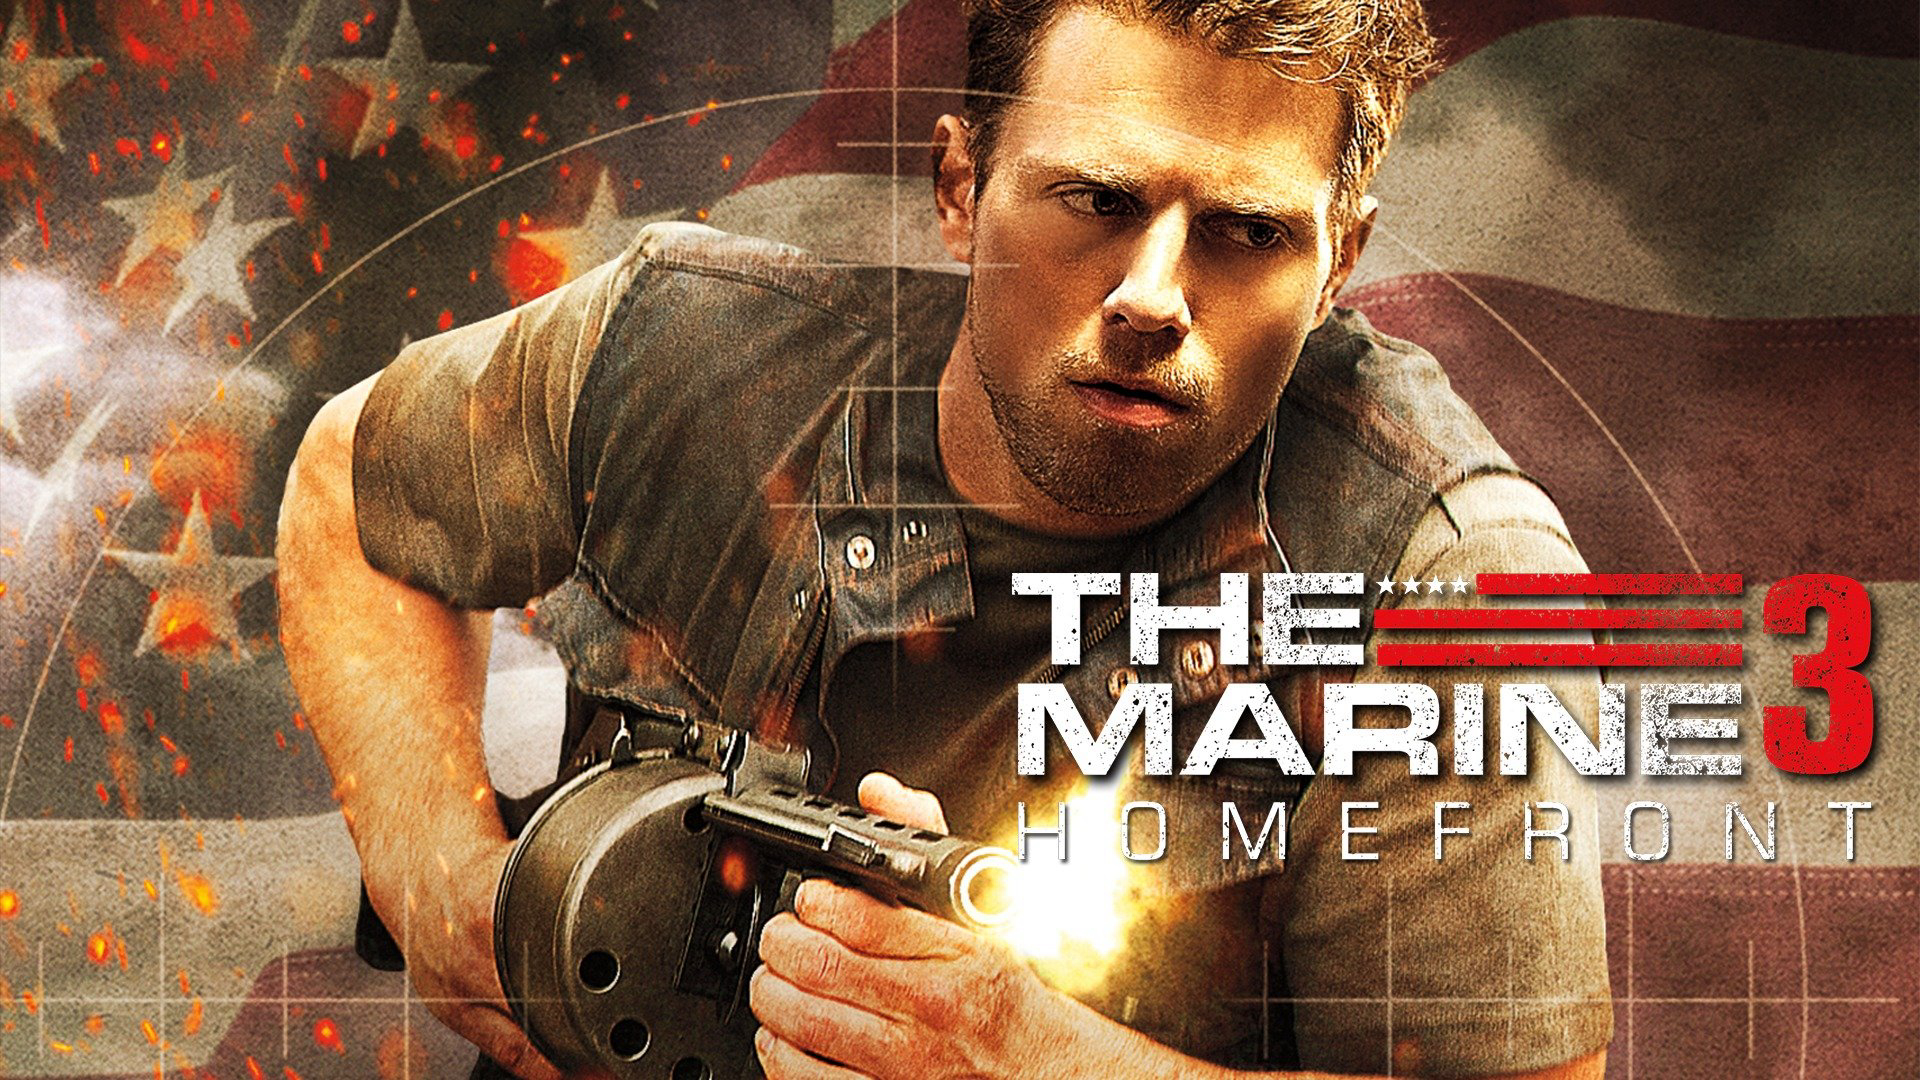 The Marine 3: Homefront - The Marine 3: Homefront (2013)